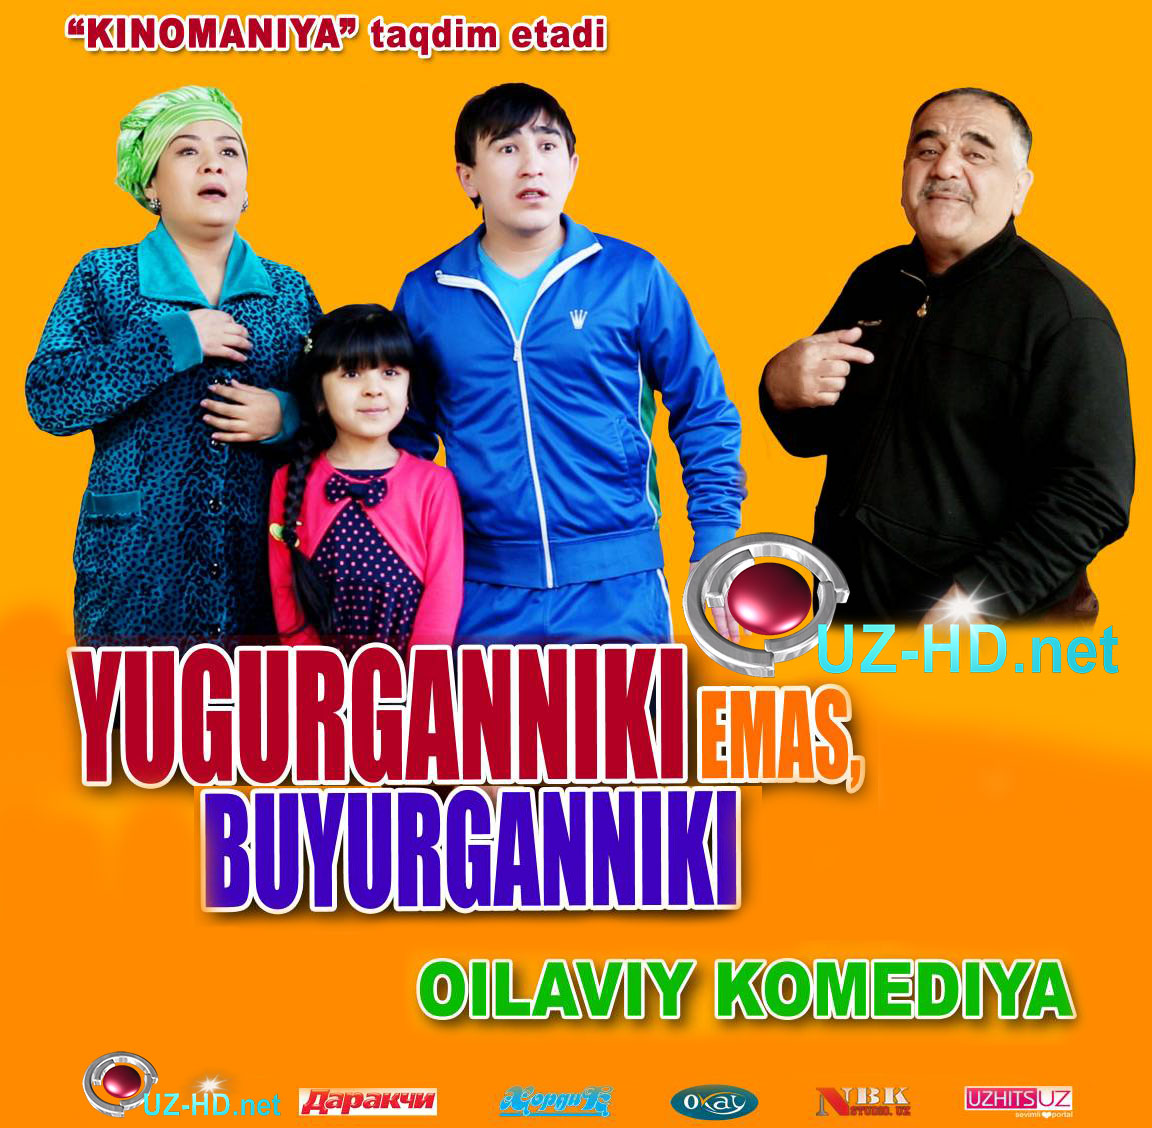 Yugurganniki Emas Buyurganniki (O'zbek kino) 2015-2016